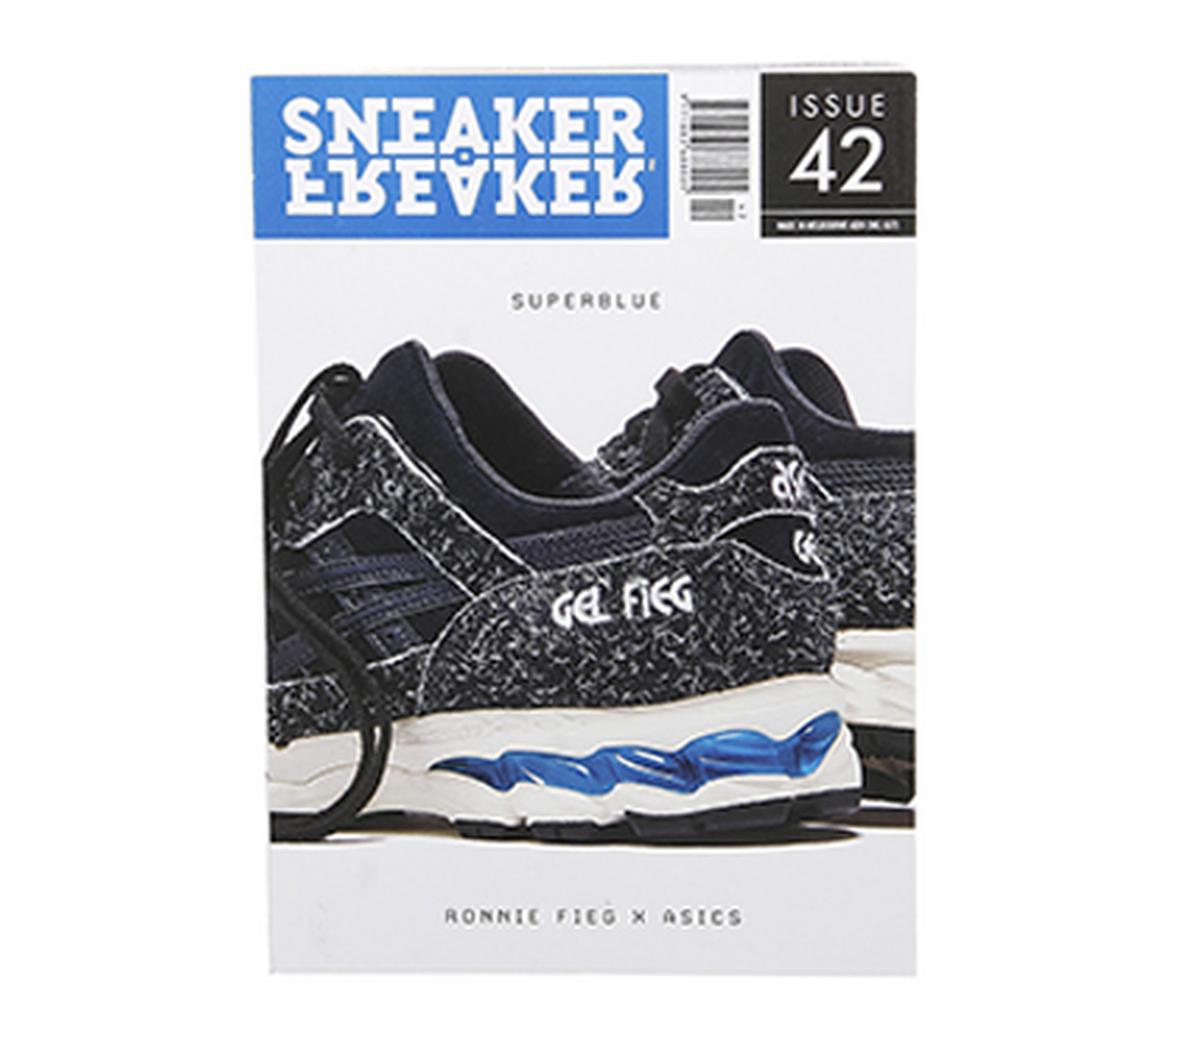 Sneaker FreakerSneaker Freaker MagazineIssue 42